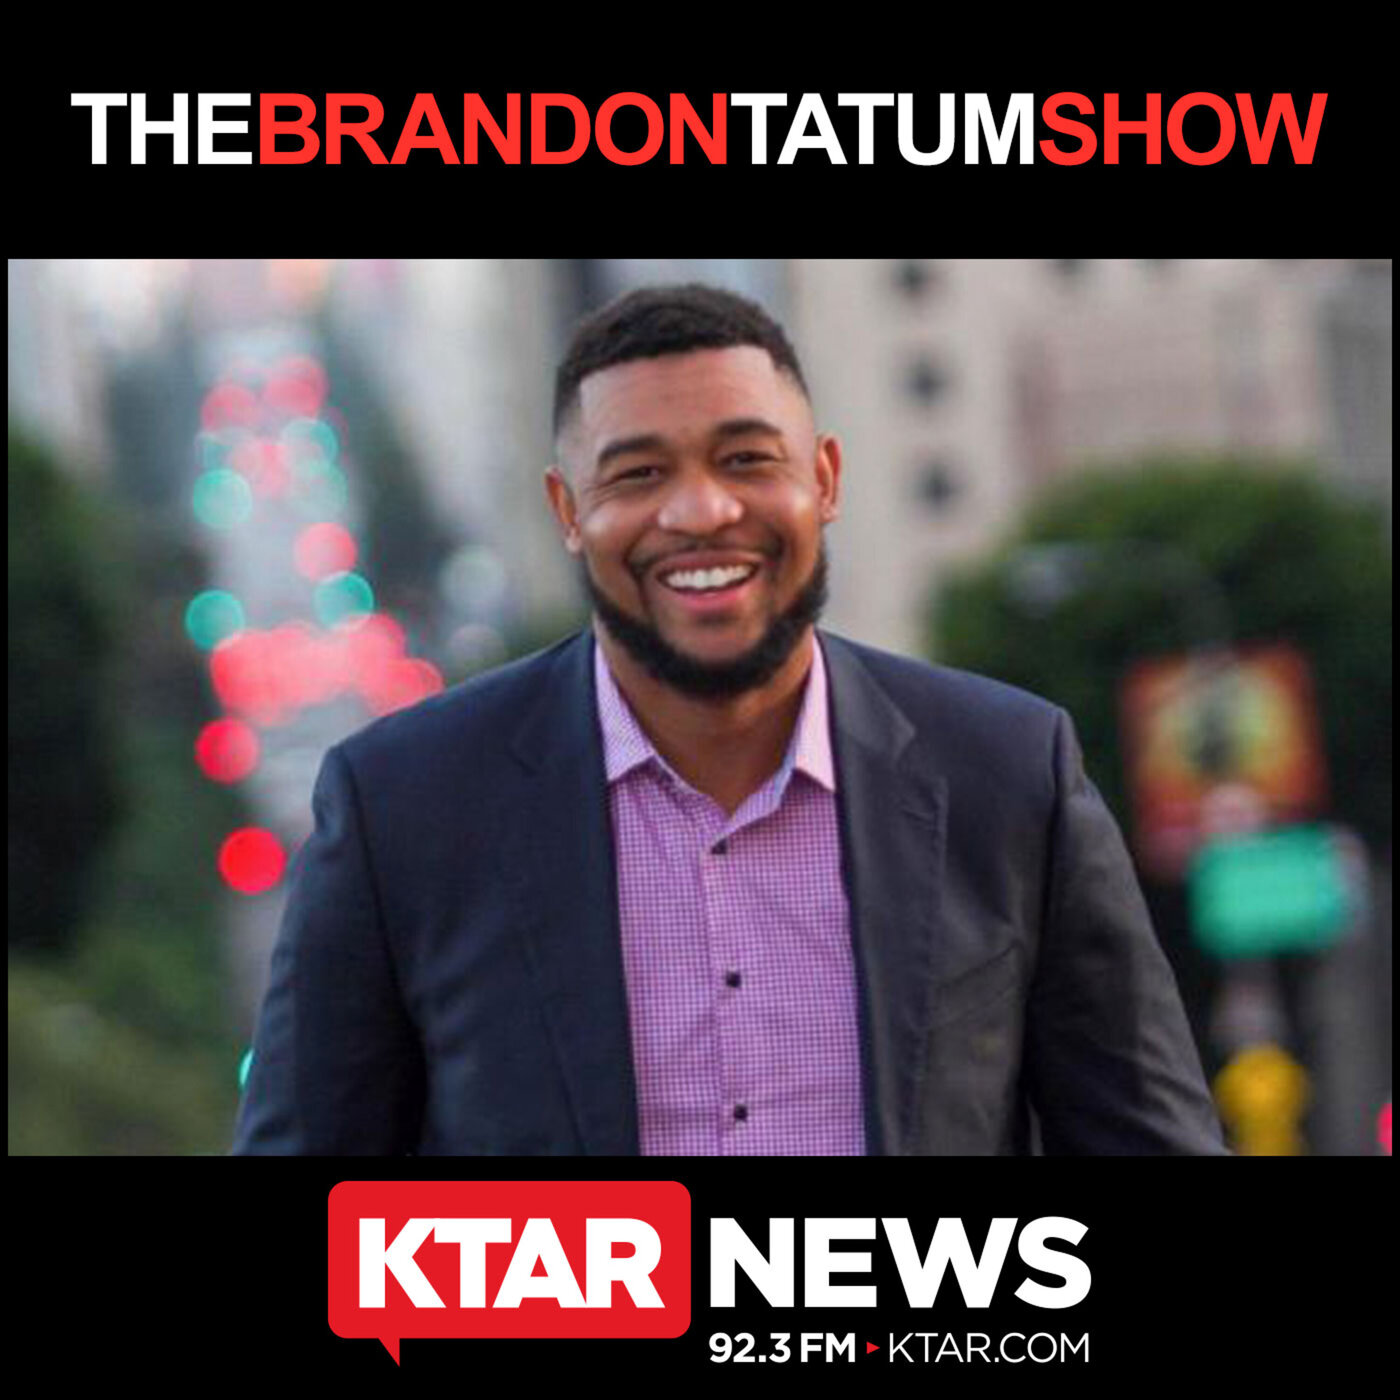 April 18, 2020 - The Brandon Tatum Show